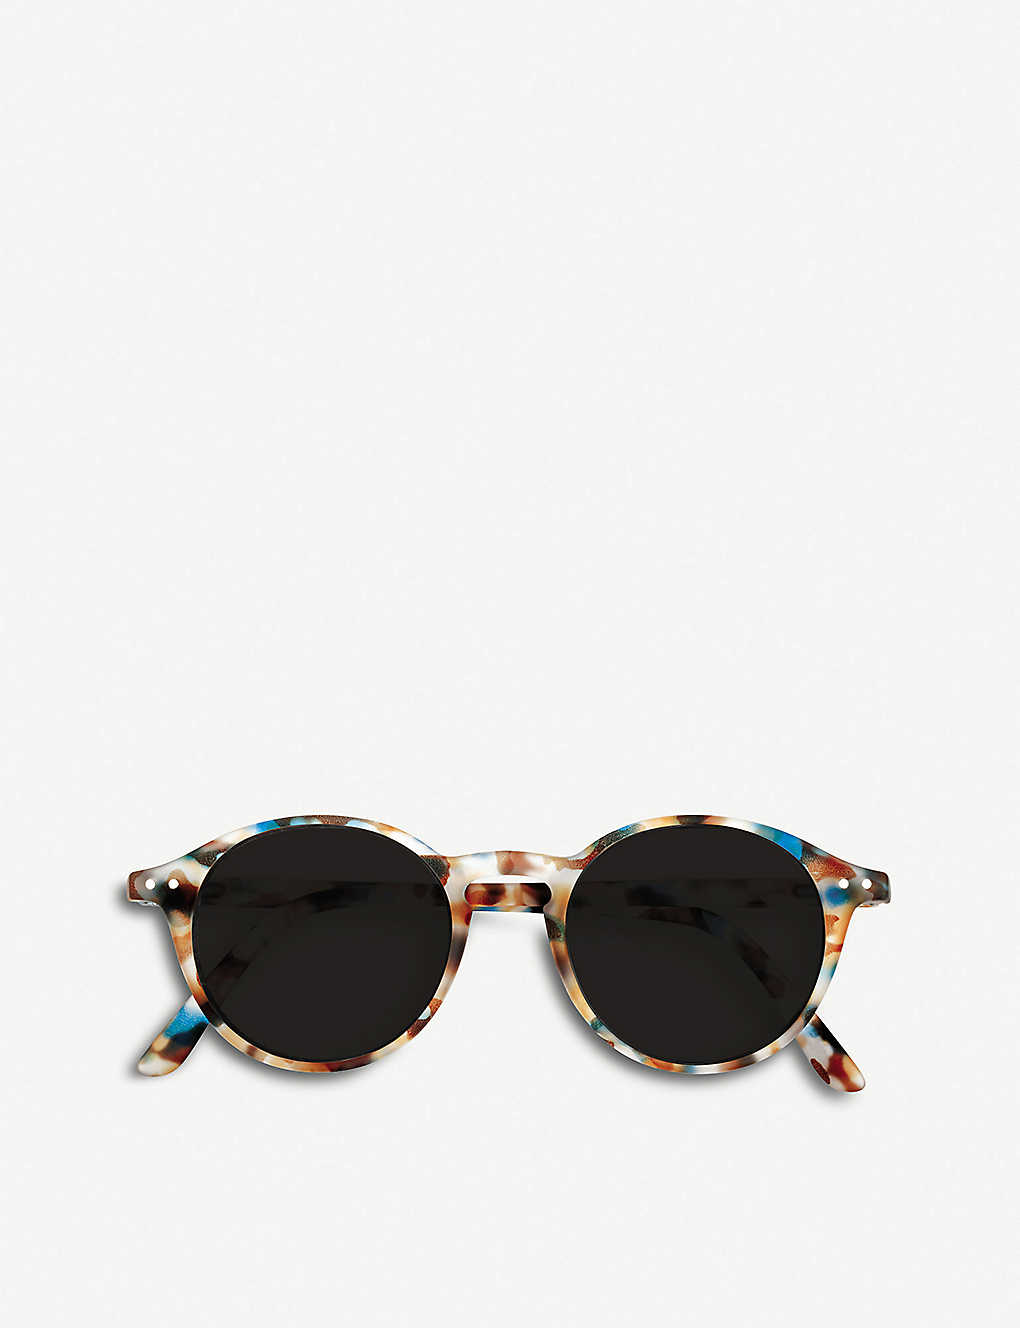 Shop Izipizi #d-frame Acetate Reading Sunglasses +3.00